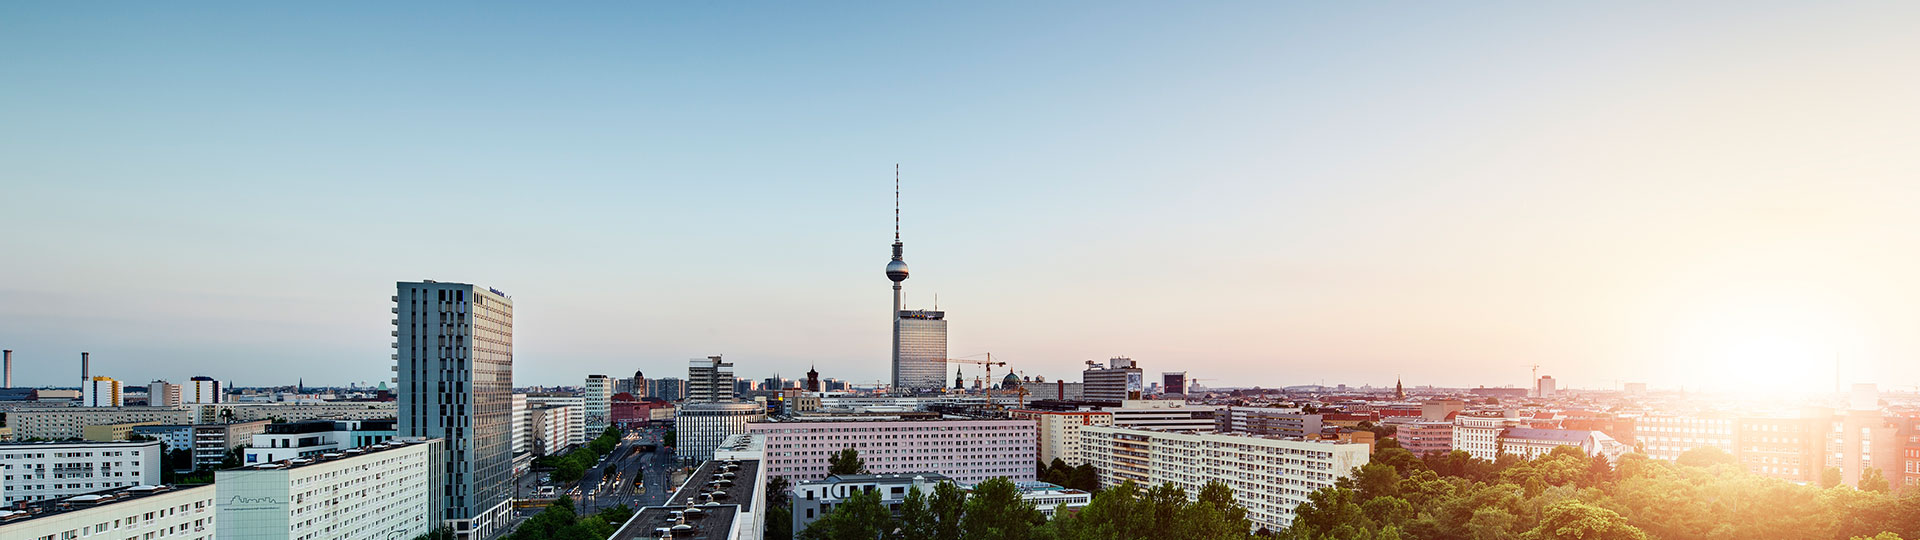 Stadt Berlin